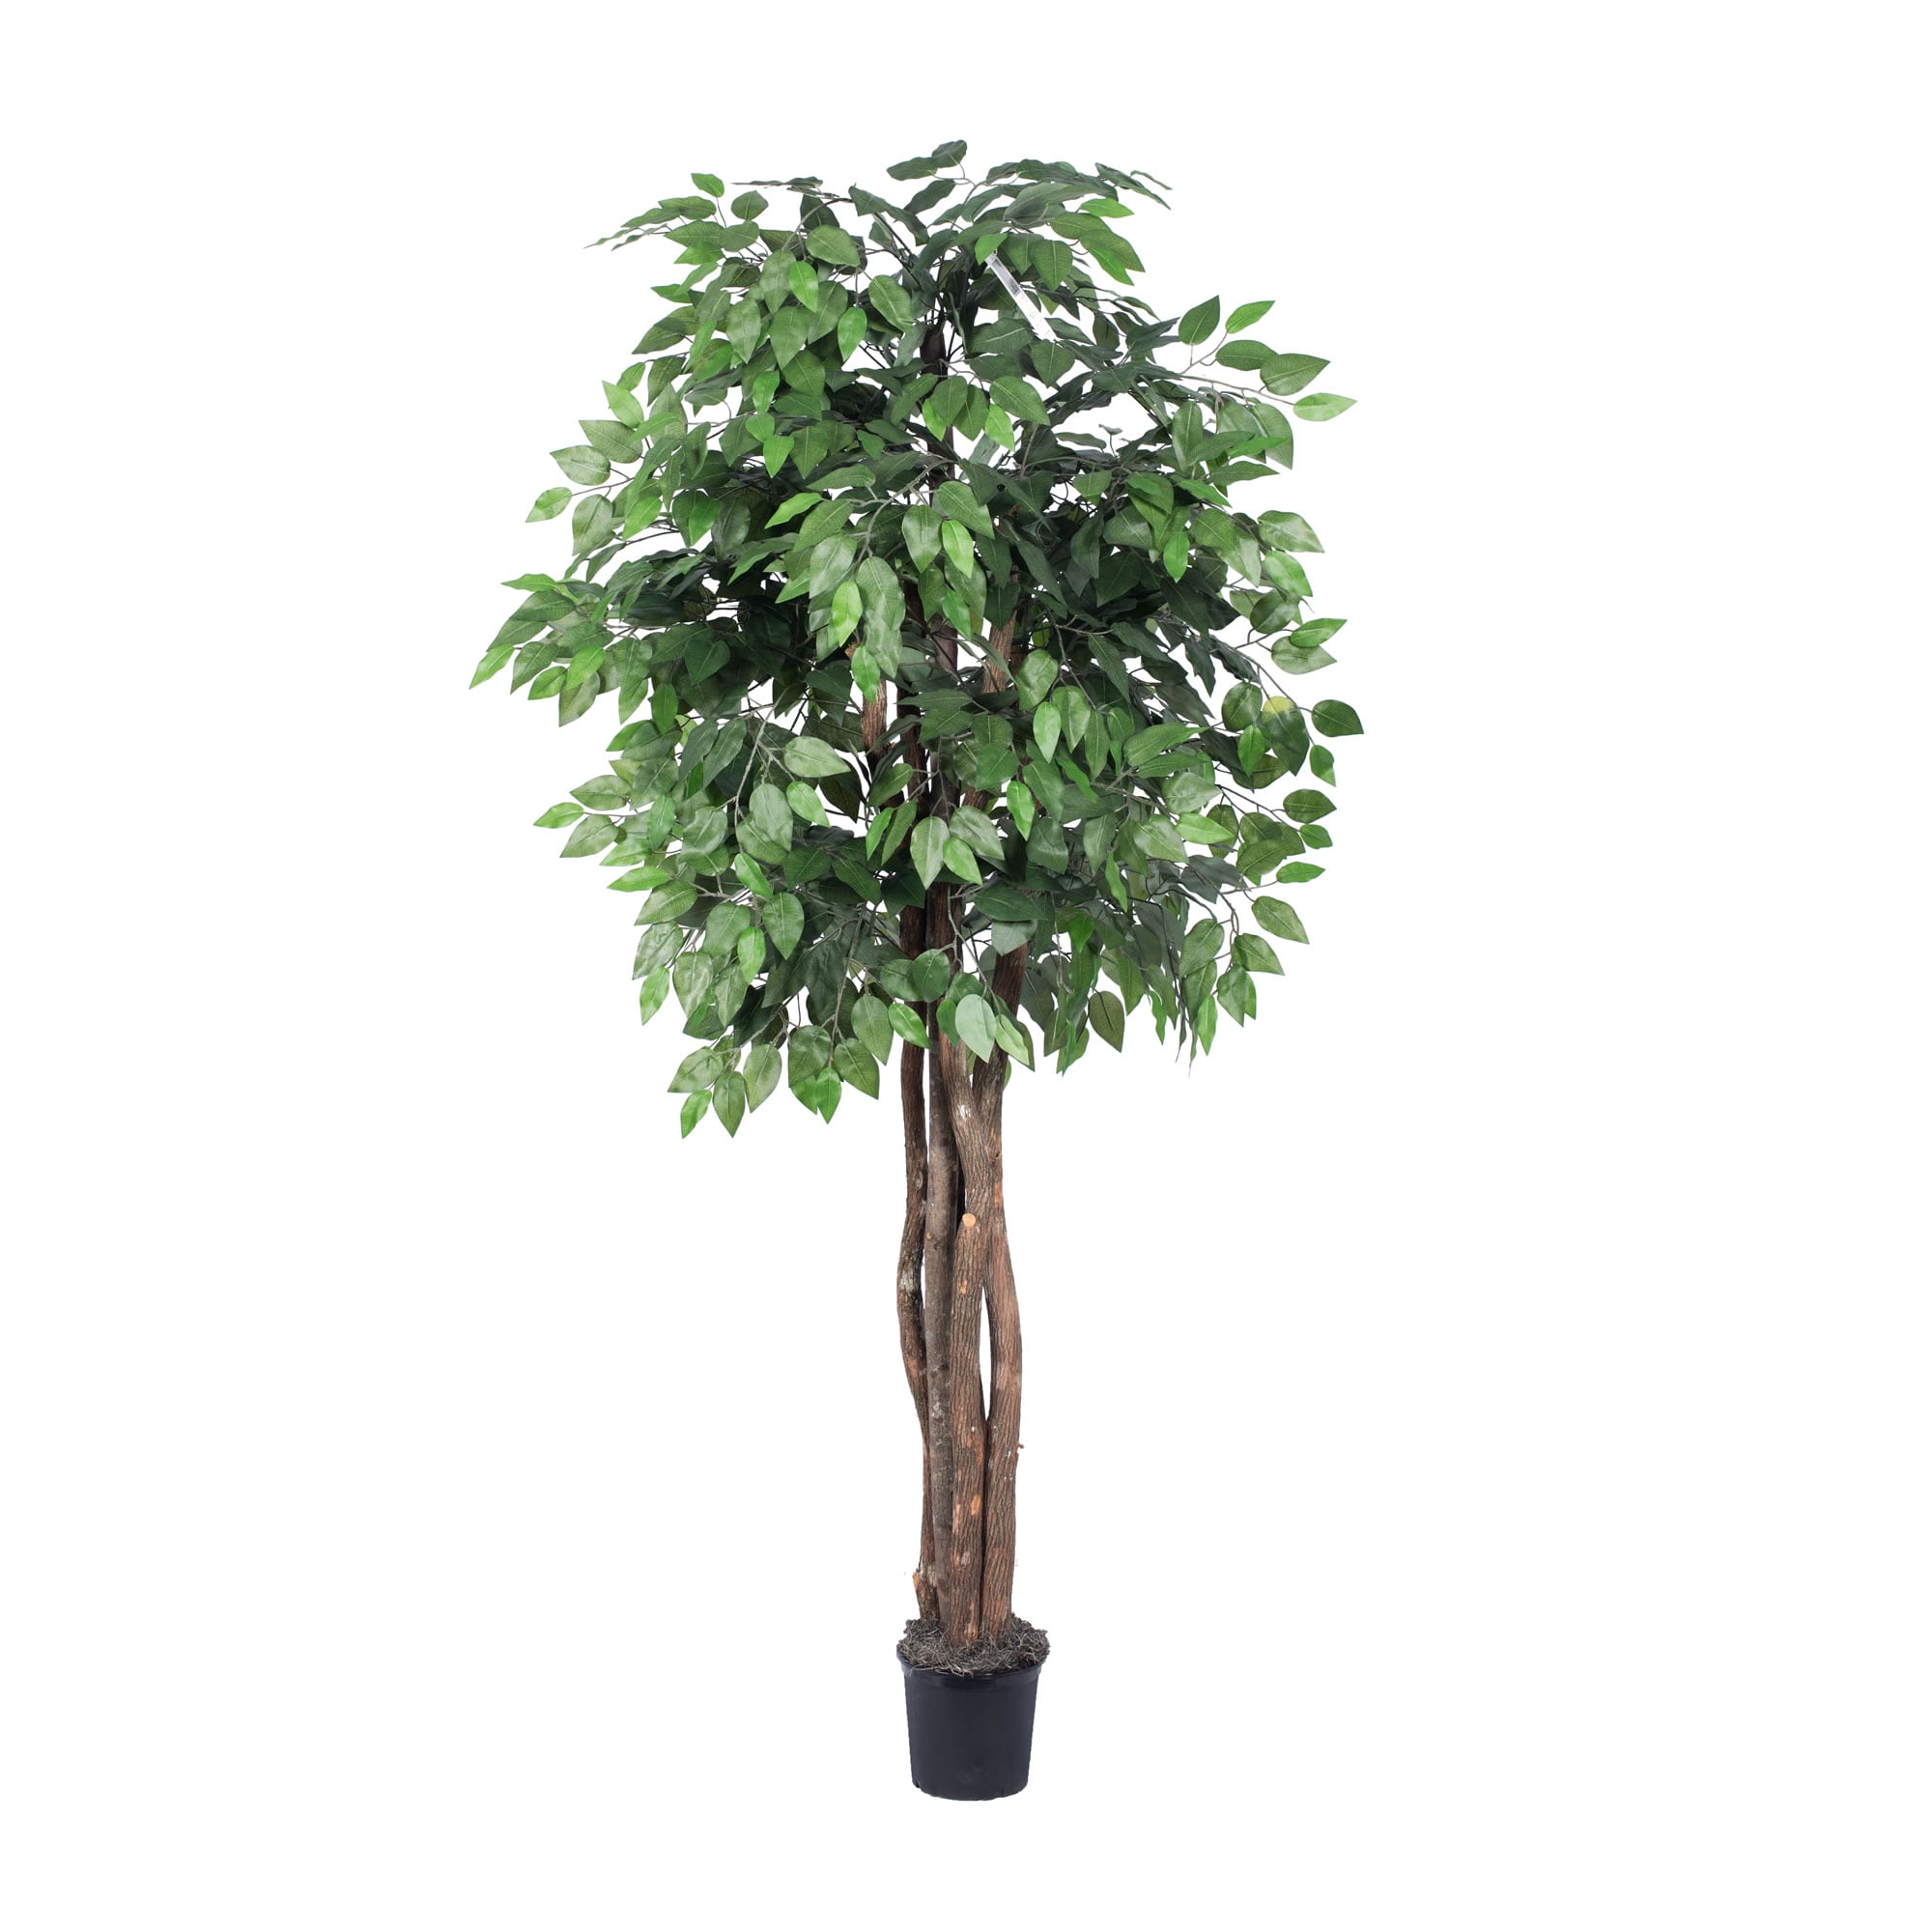 Vickerman 6' Artificial Ficus Executive Set in Black Pot - Walmart.com